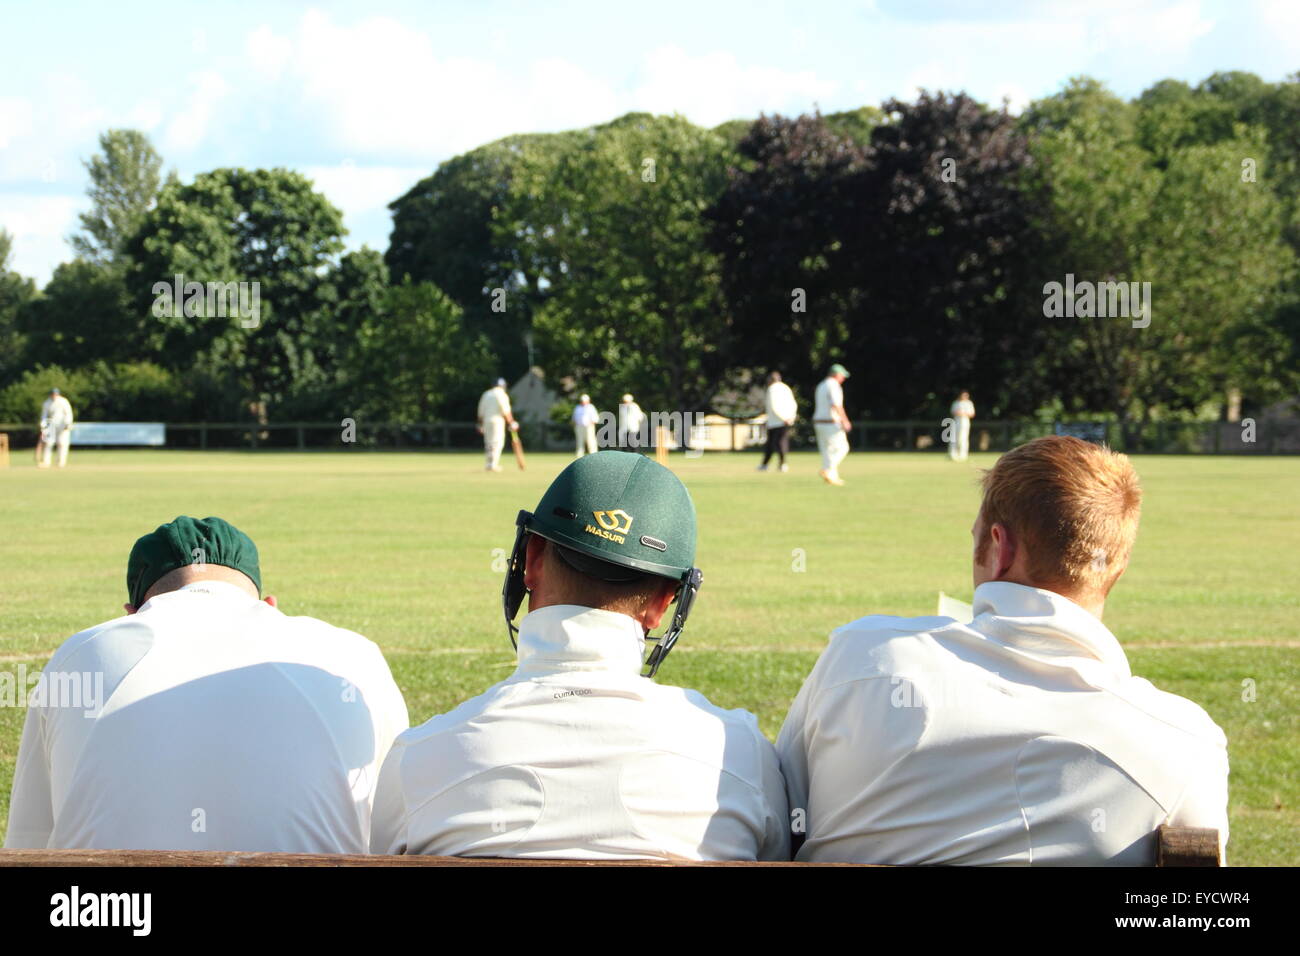 Cricketers Uhr ein Wentworth Cricket Club Match im Wentworth Village in der Nähe von Roterham, Yorkshire, England UK - Sommer 2015 Stockfoto